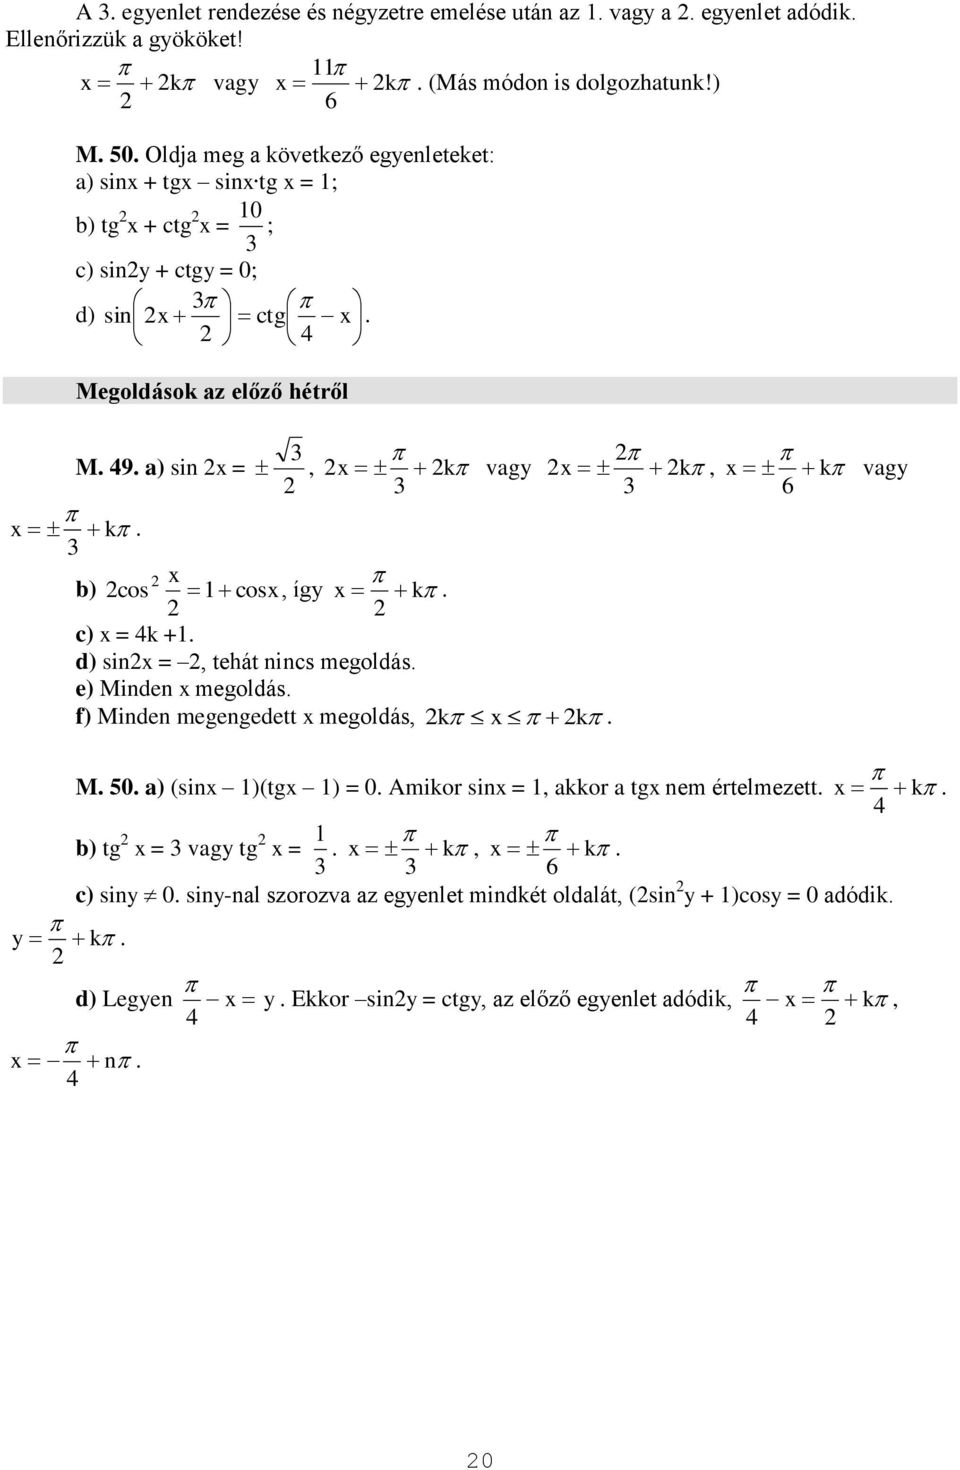 k vagy 6 b) cos cos, így k c) = k + d) sin =, tehát nincs megoldás e) Minden megoldás f) Minden megengedett megoldás, k k M 0 a) (sin )(tg ) = 0 Amikor sin =, akkor a